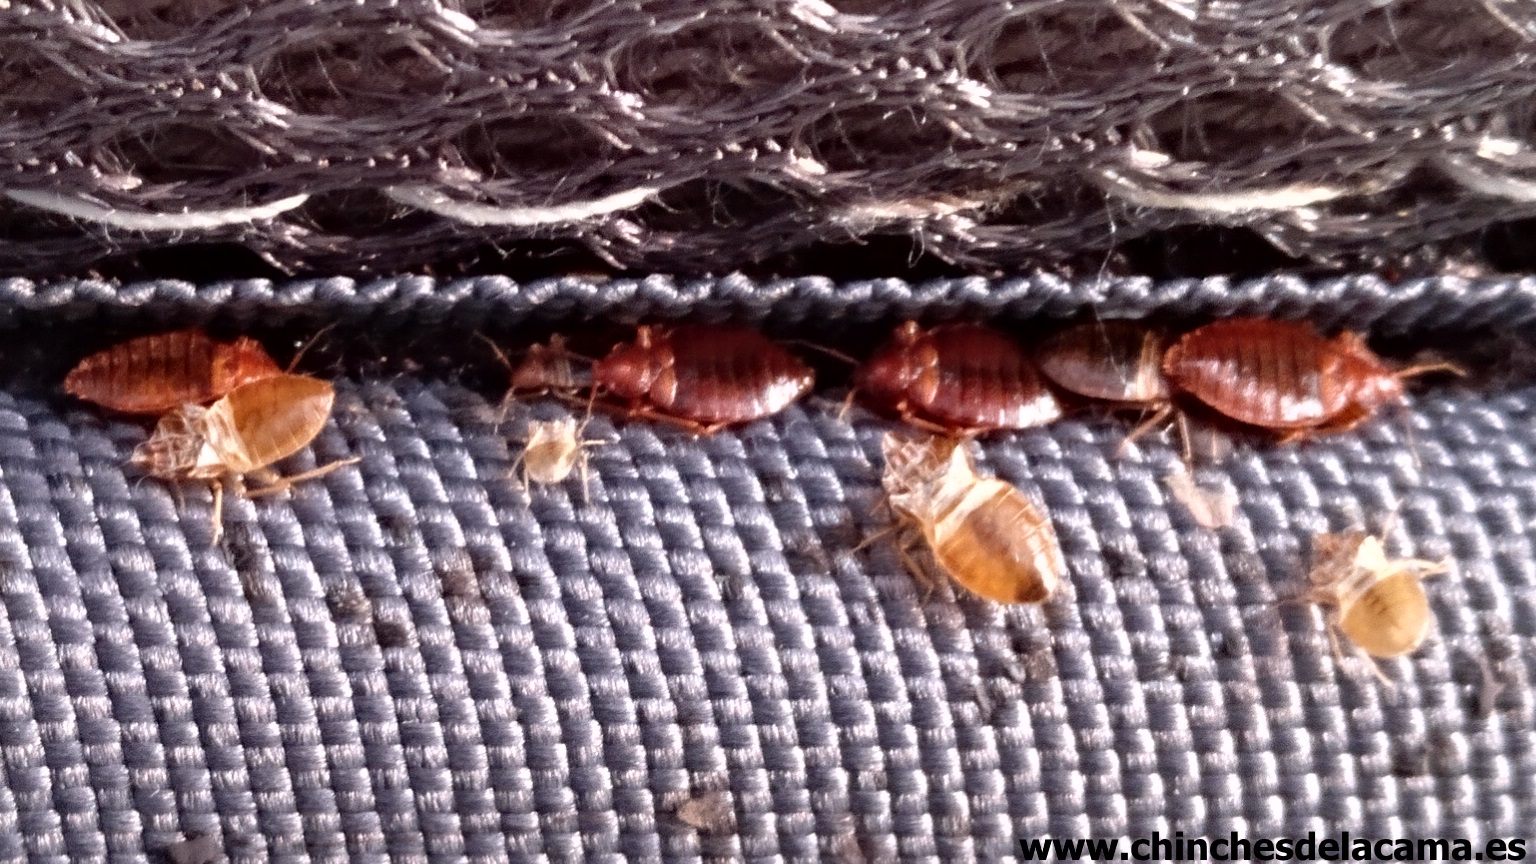 Chinches de la cama (Cimex lectularius) adultos y ninfas en un colchn